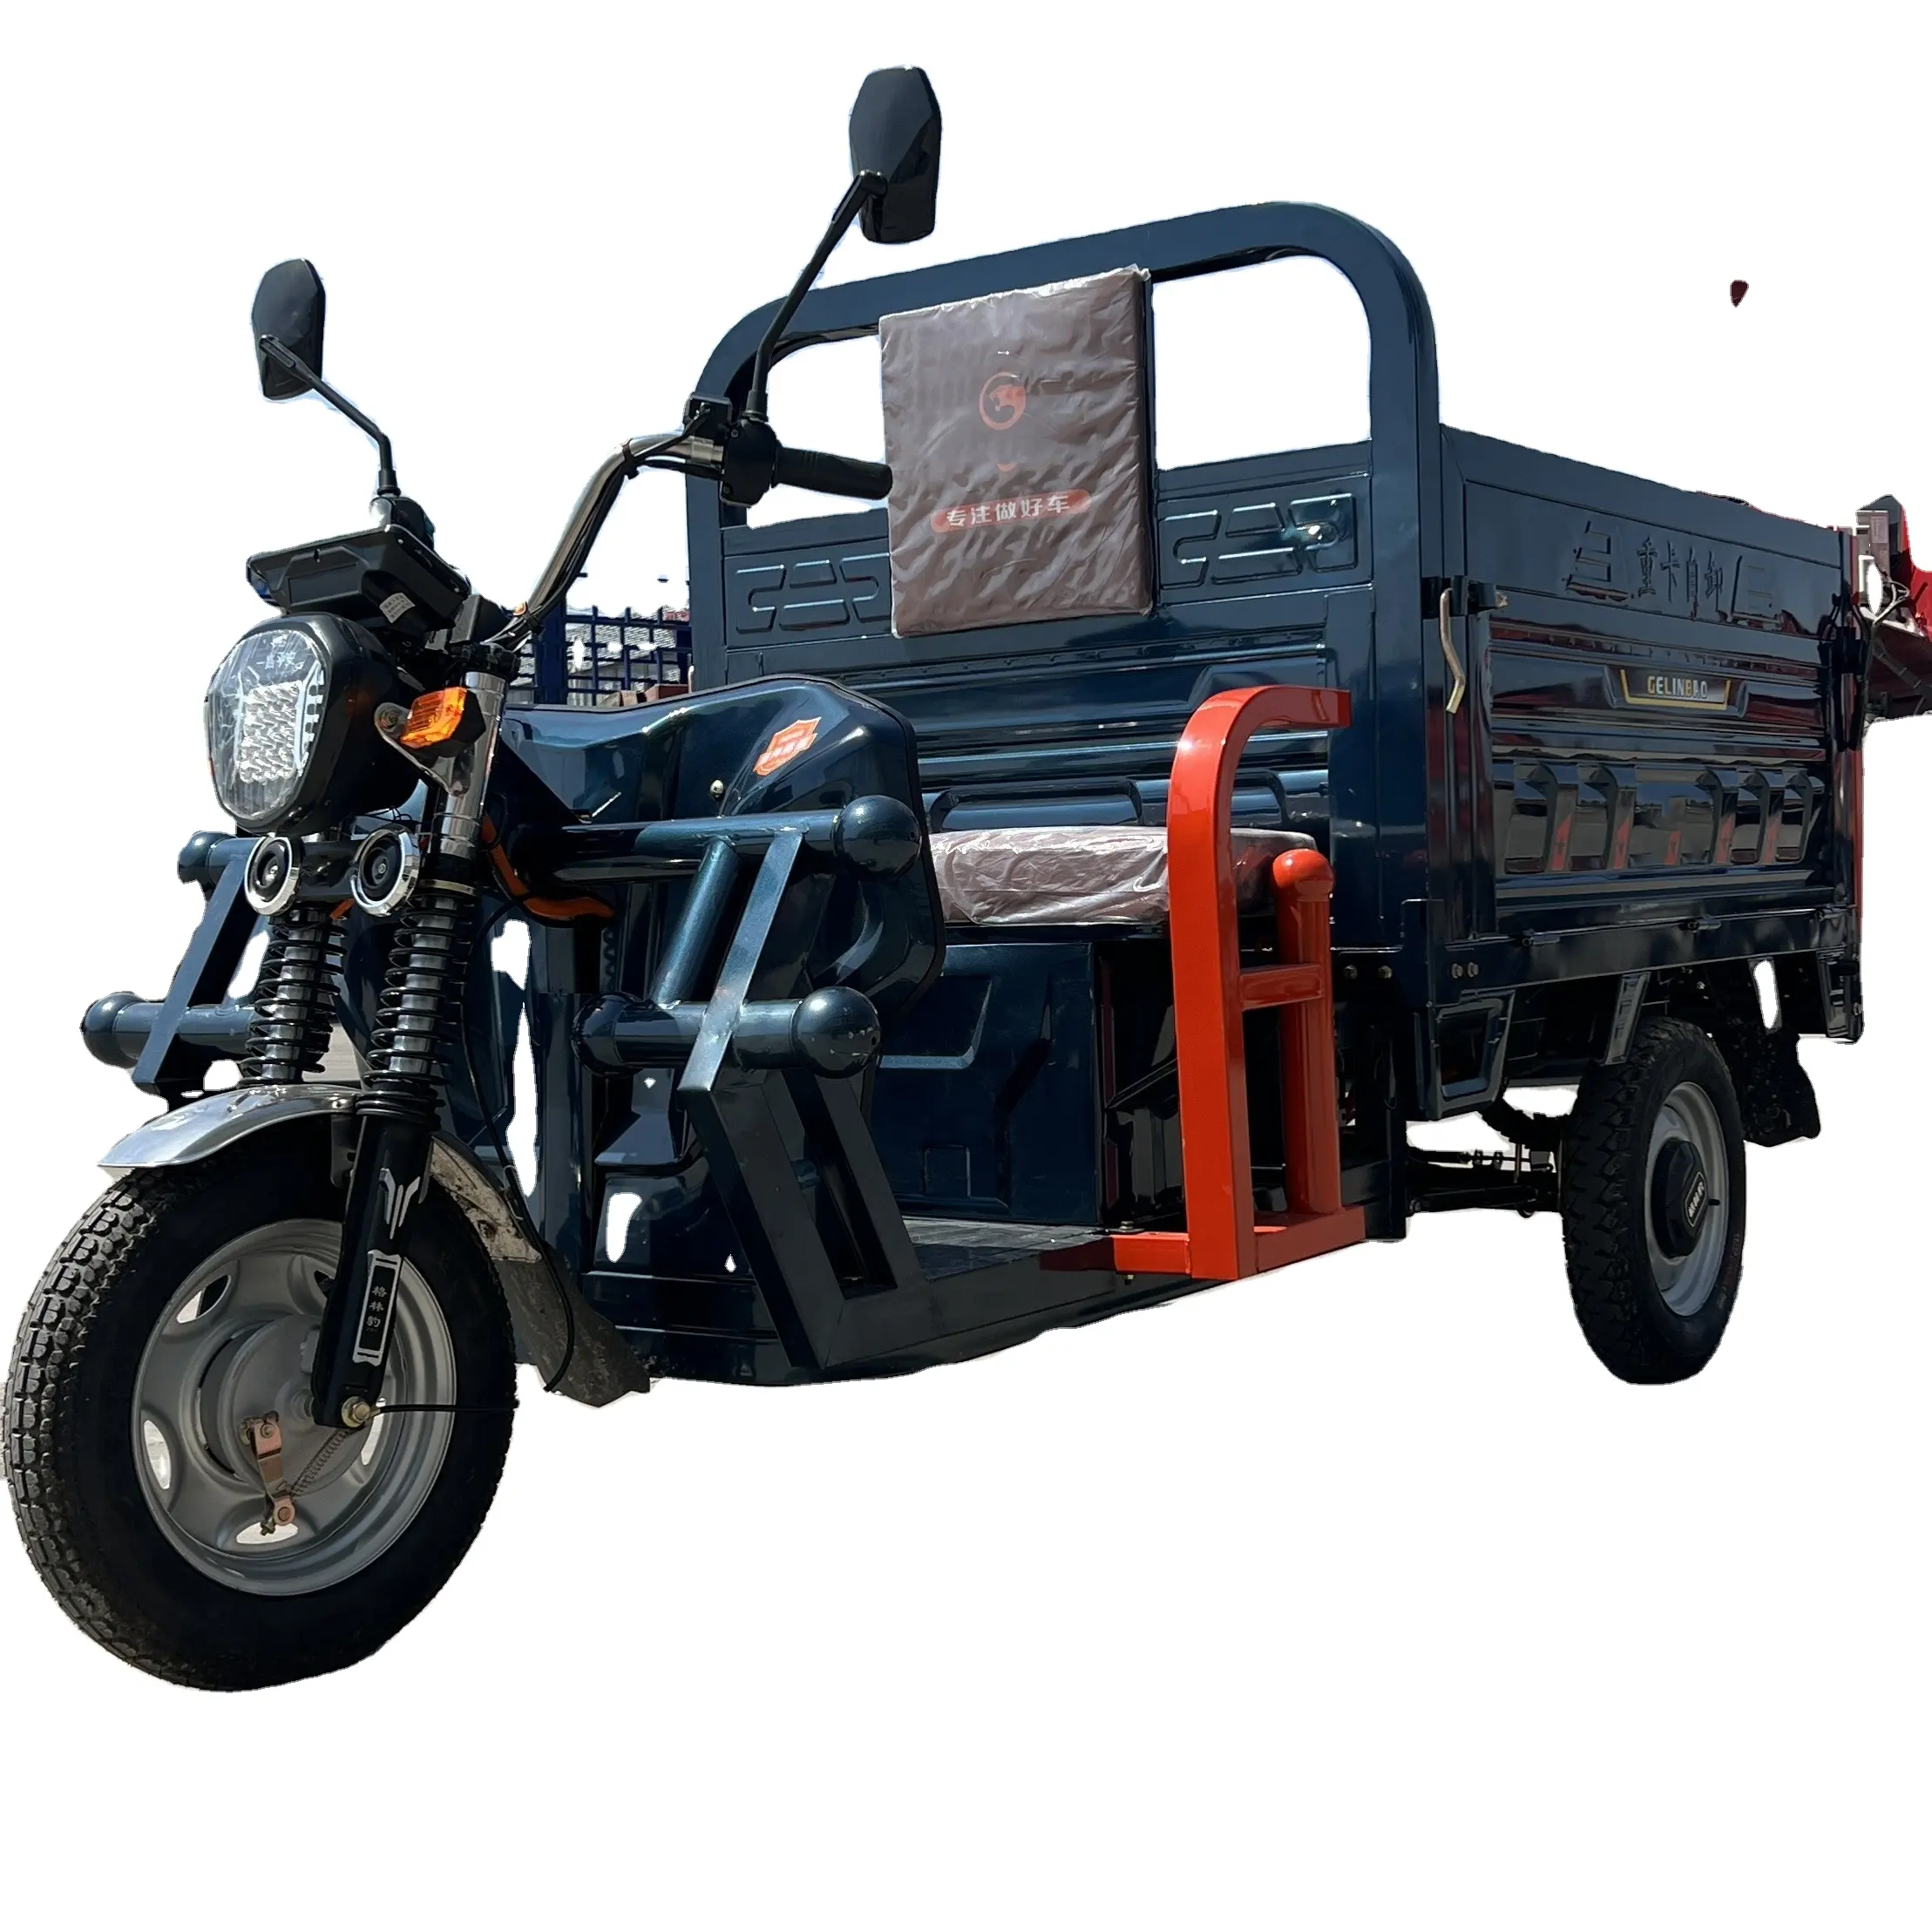 بسعر المصنع دراجة ثلاثية العجلات كهربائية كبيرة ، حمولة ثقيلة ، دراجة ثلاثية العجلات لتفريغ البضائع للمزرعة ، رافعة كهربائية